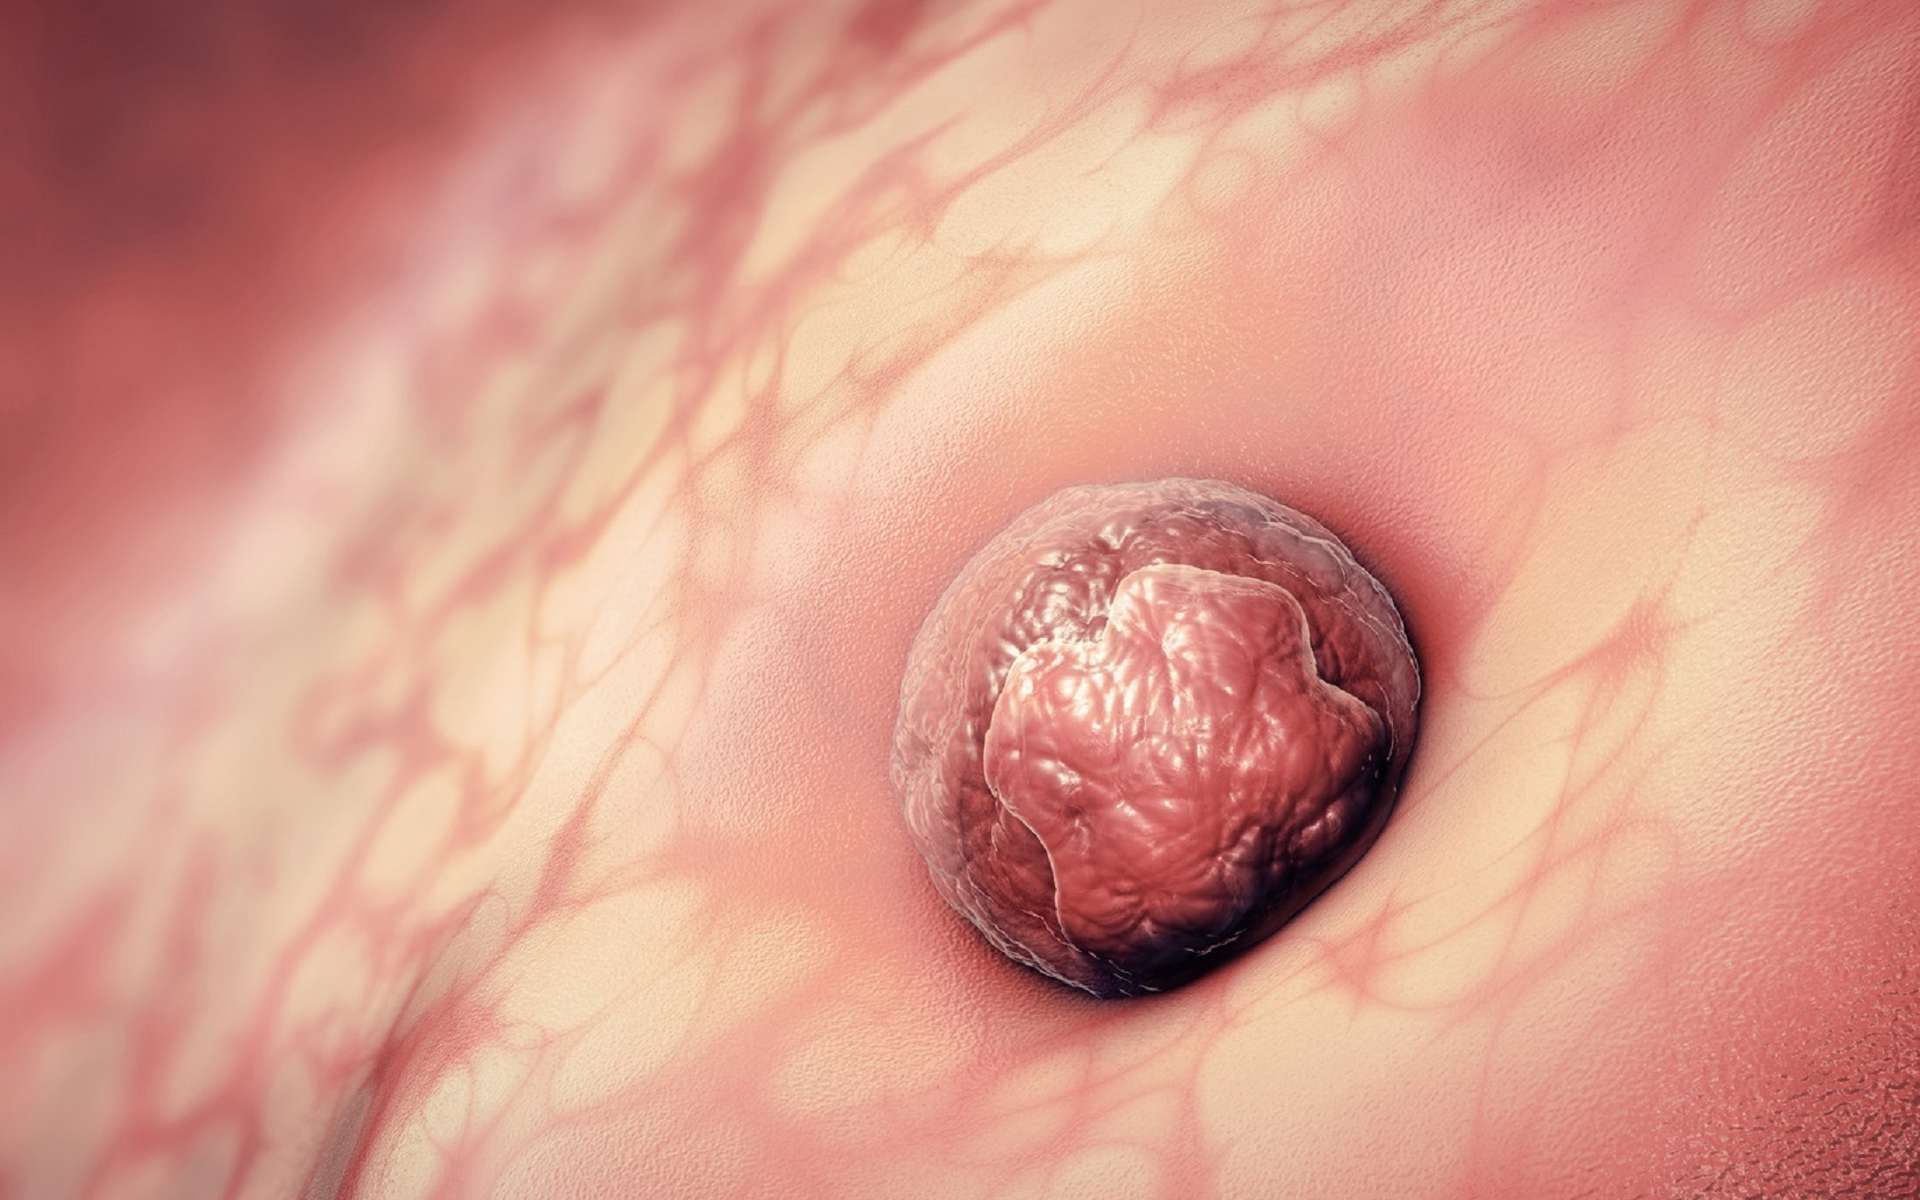 La nidation est l’étape au cours de laquelle l’embryon s’implante dans l’utérus. © Christoph Burgstedt, Fotolia